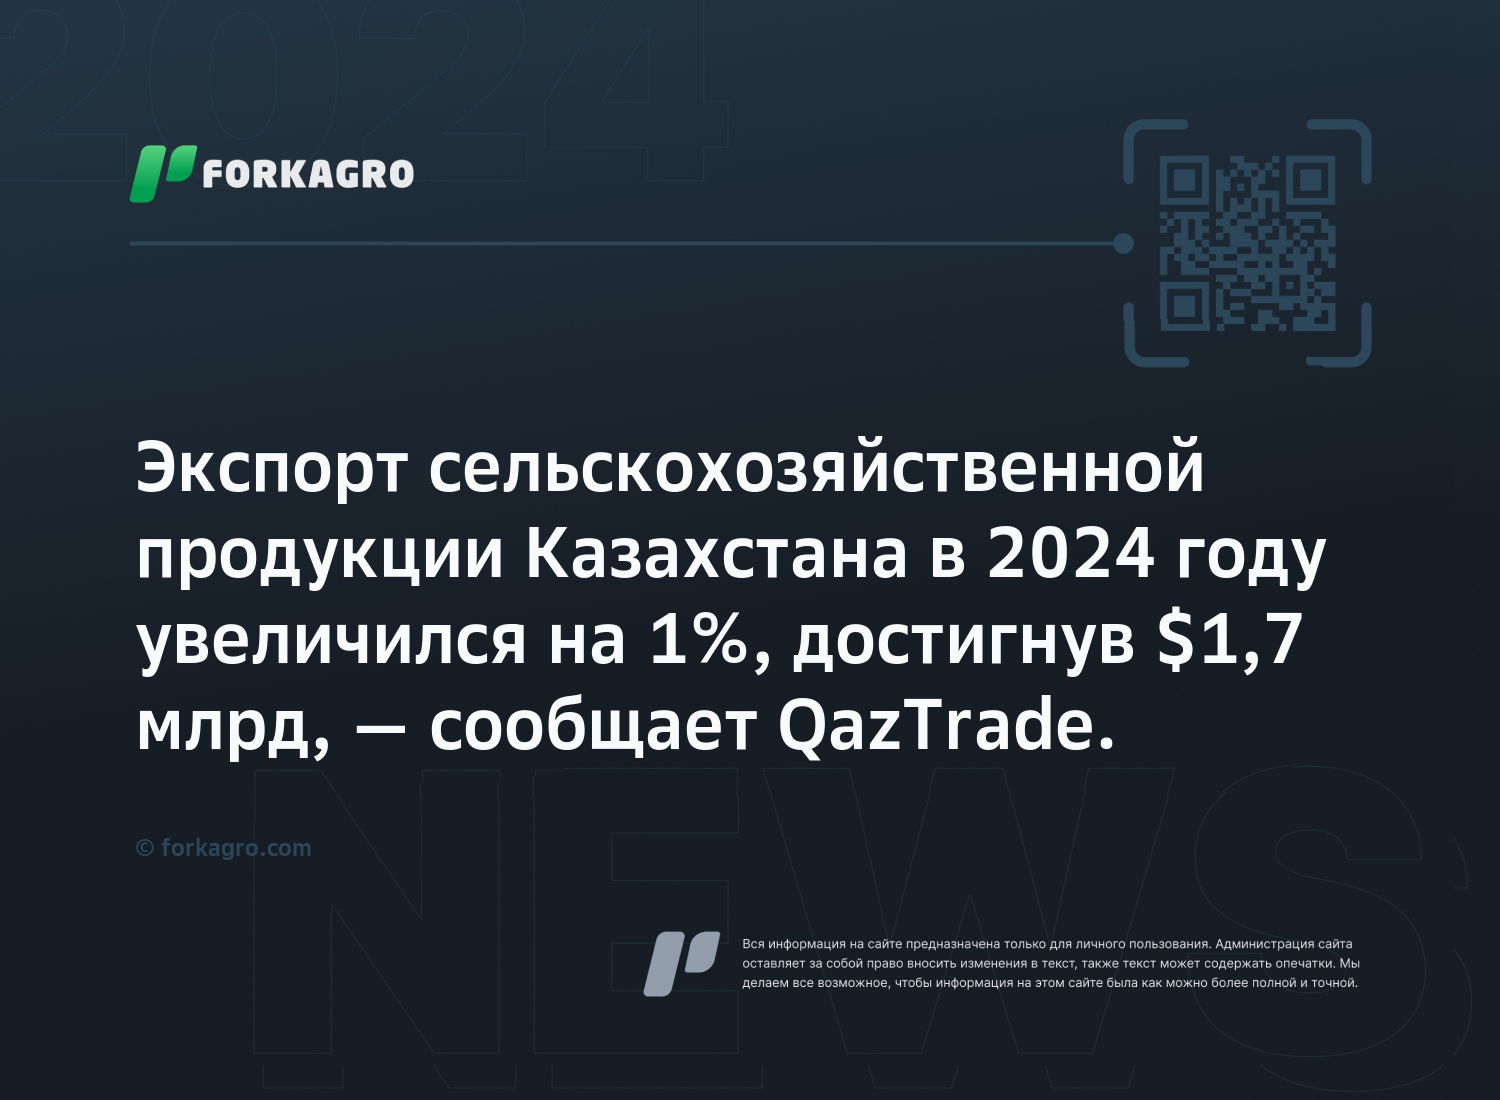 Экспорт сельскохозяйственной продукции Казахстана в 2024 году увеличился на 1%, достигнув $1,7 млрд, — сообщает QazTrade.